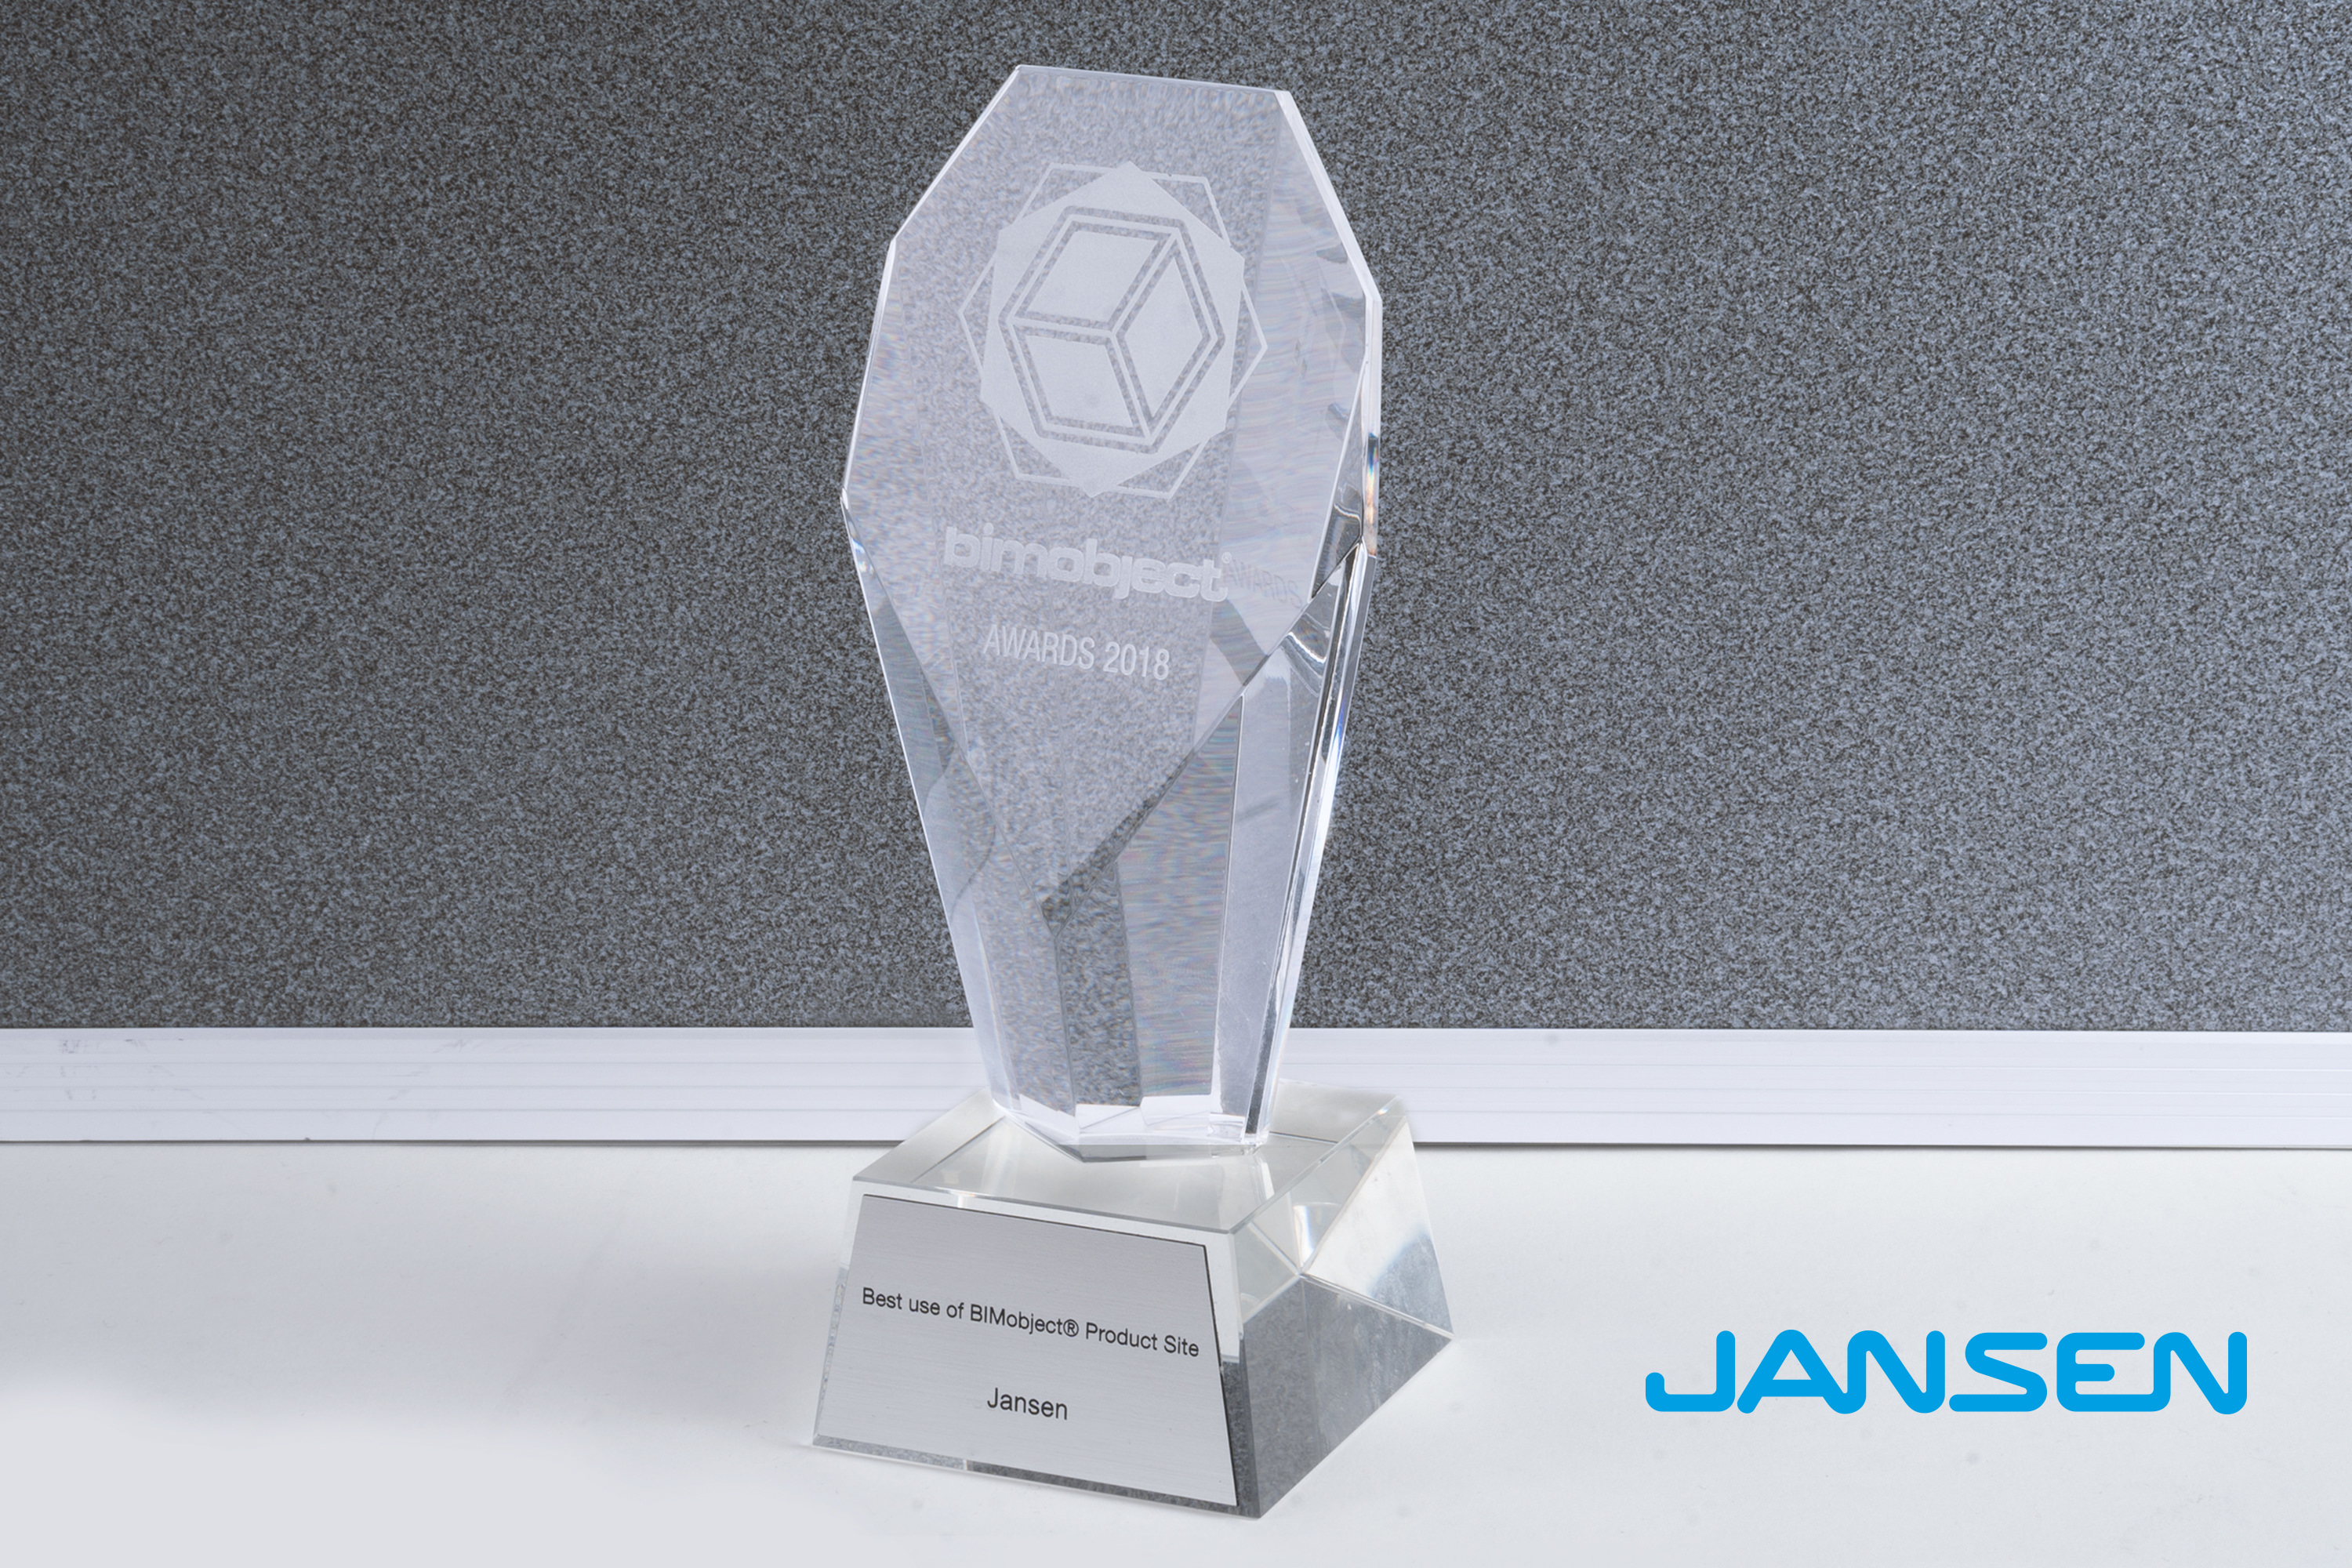 Jansen AG - BIMobject Award 2018